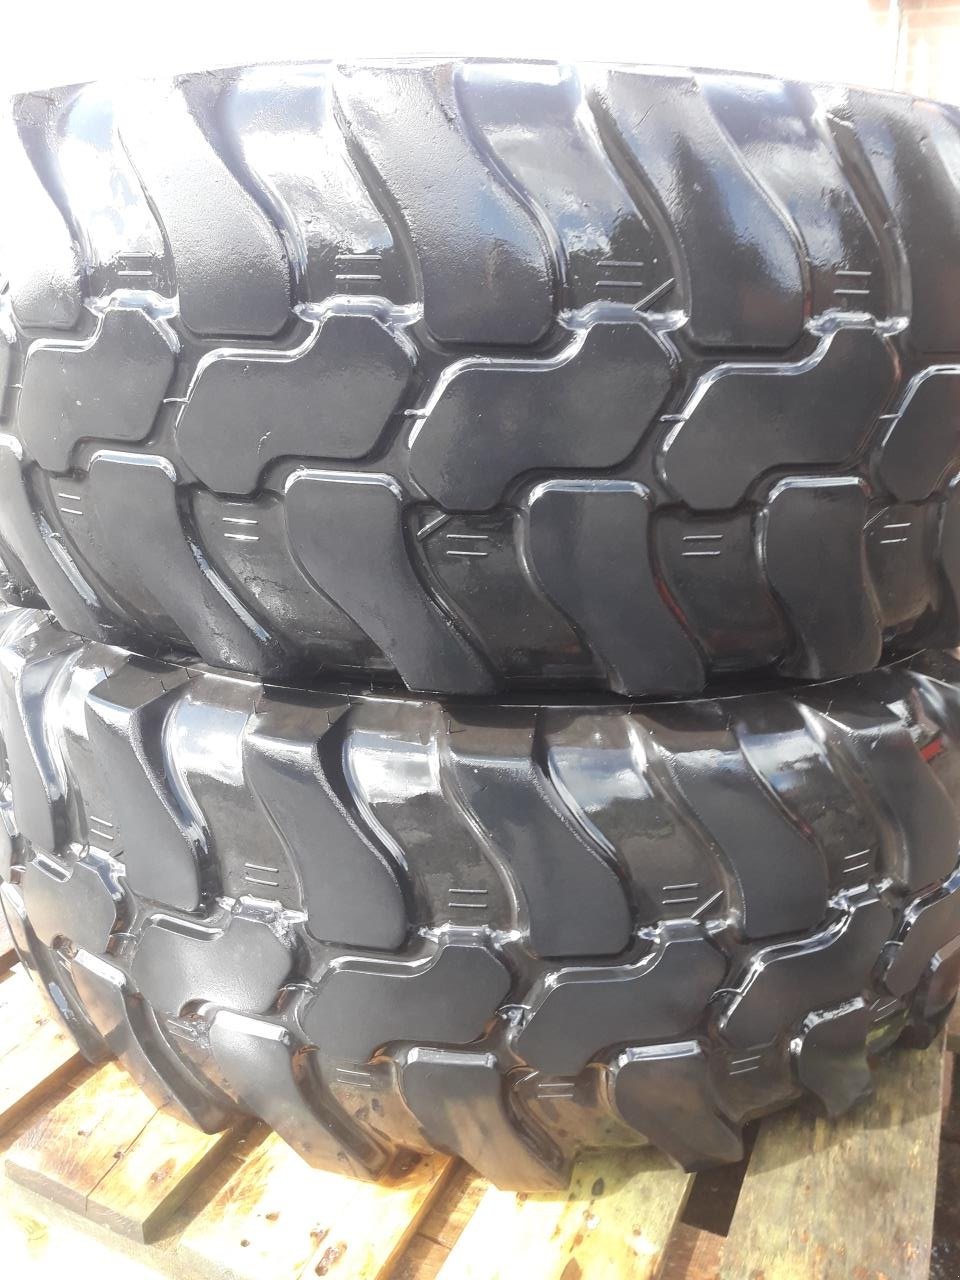 Reifen des Typs Dunlop 405/70 R20, Gebrauchtmaschine in Tim (Bild 1)